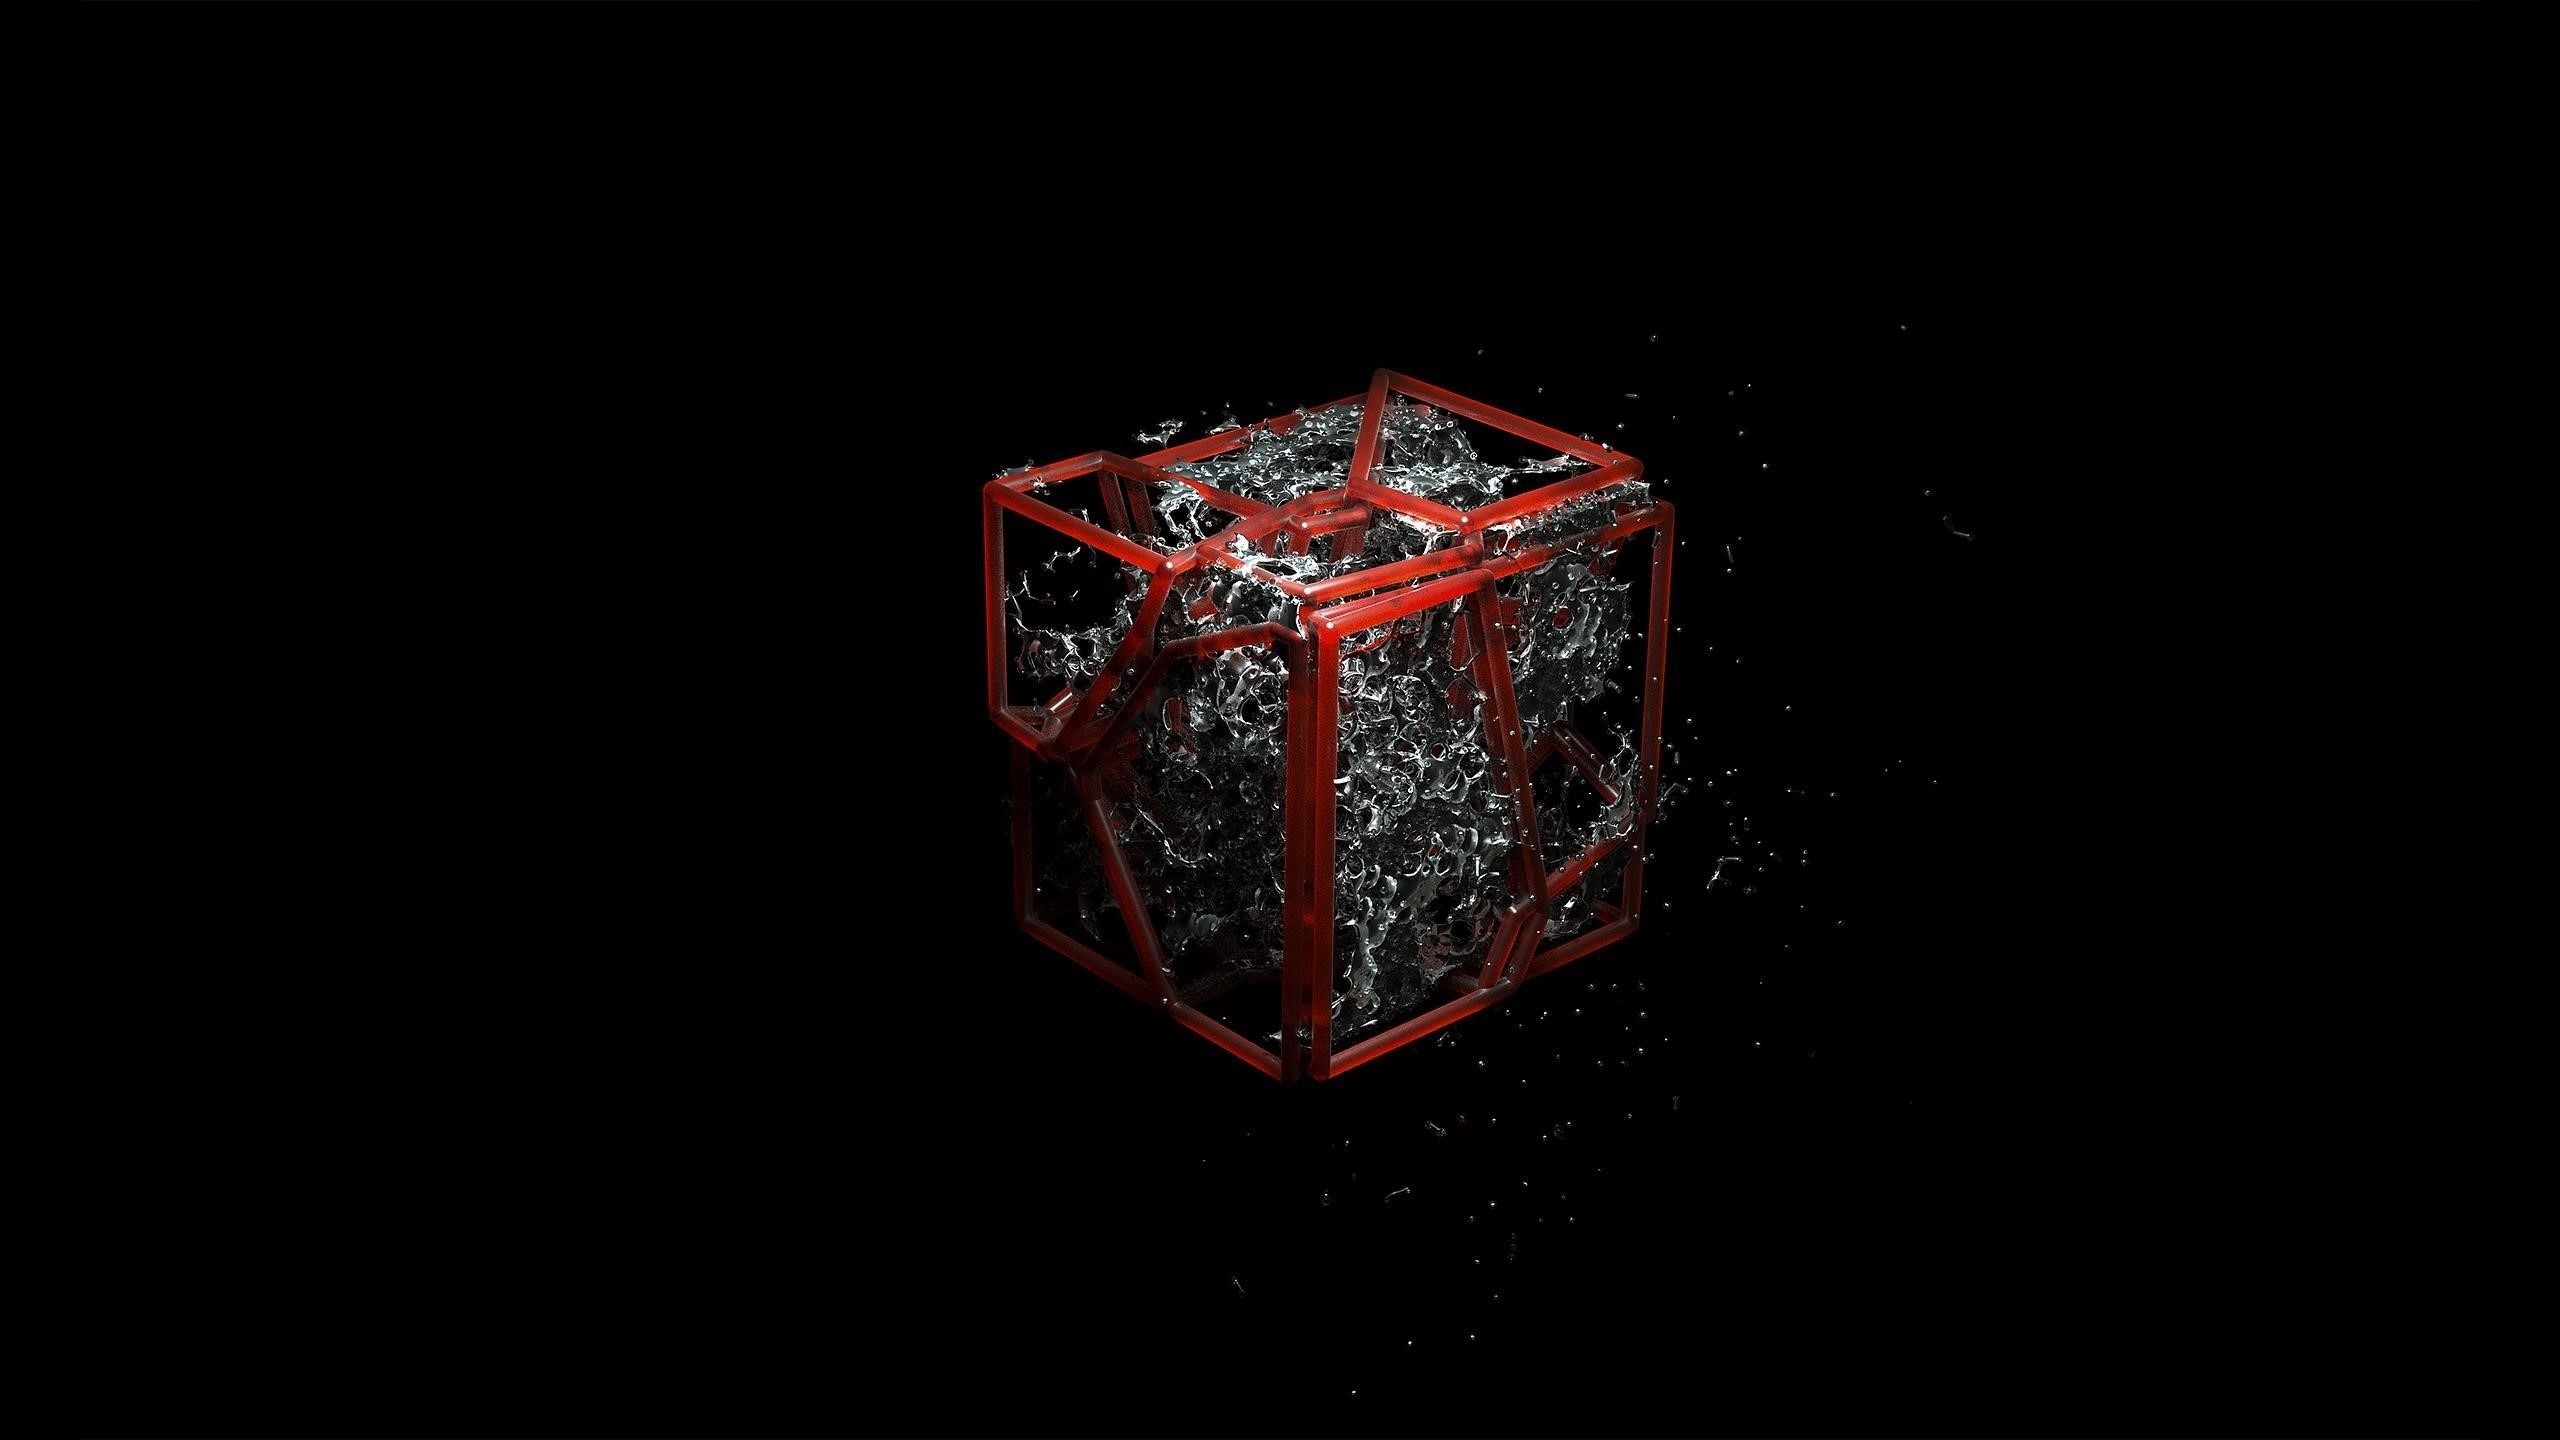 9 1024 8. Куб на черном фоне. Трехмерный рабочий стол. Подарок на темном фоне. Красный куб.